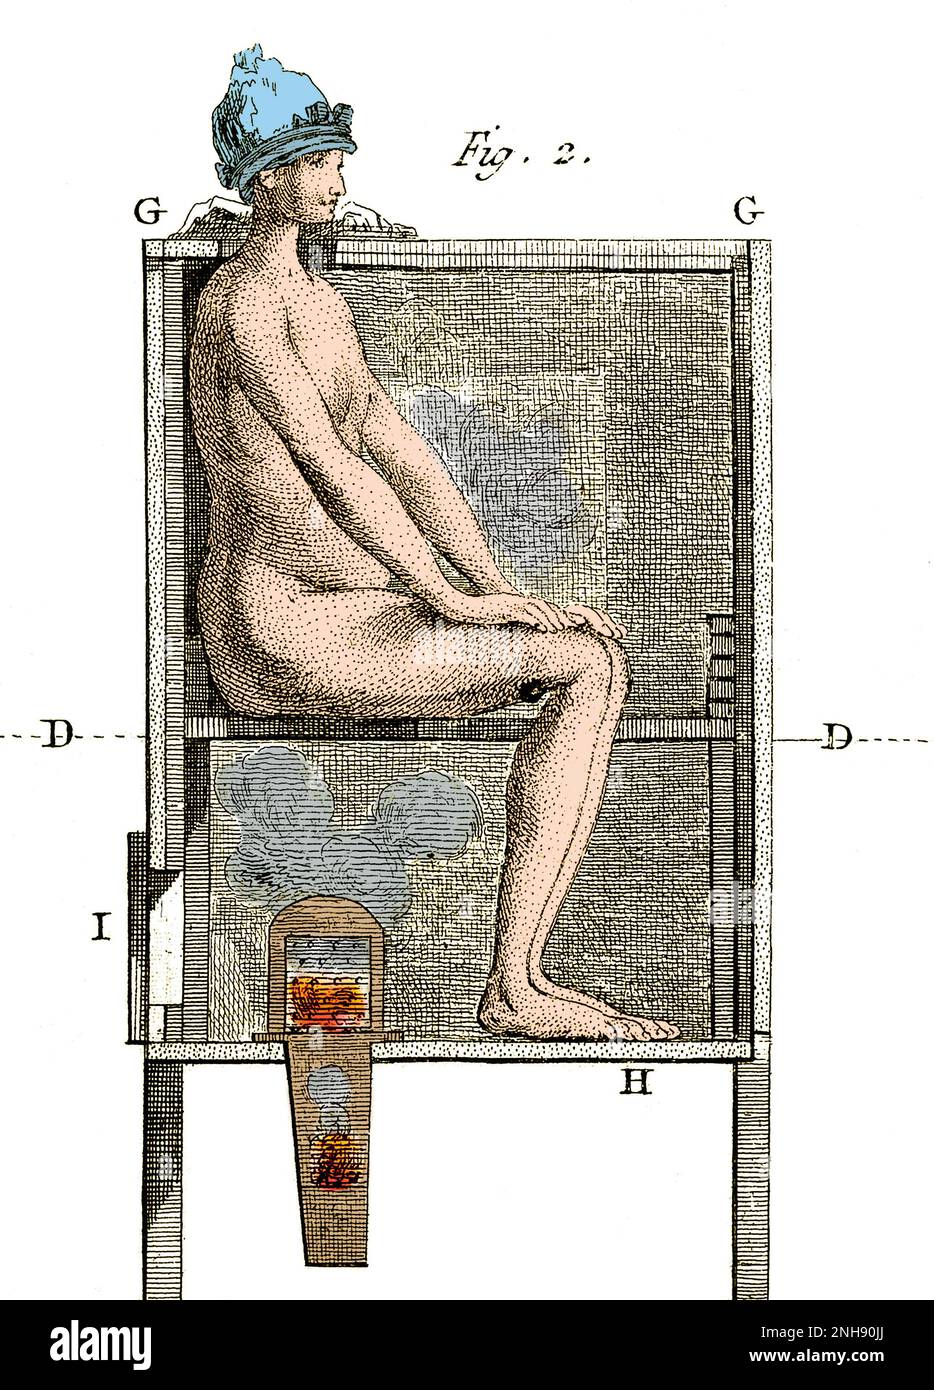 Abbildung zeigt eine Methode zur Behandlung von Geschlechtskrankheiten durch Begasung. Gravur von Pierre Lalouette, 1776. Gefärbt. Stockfoto